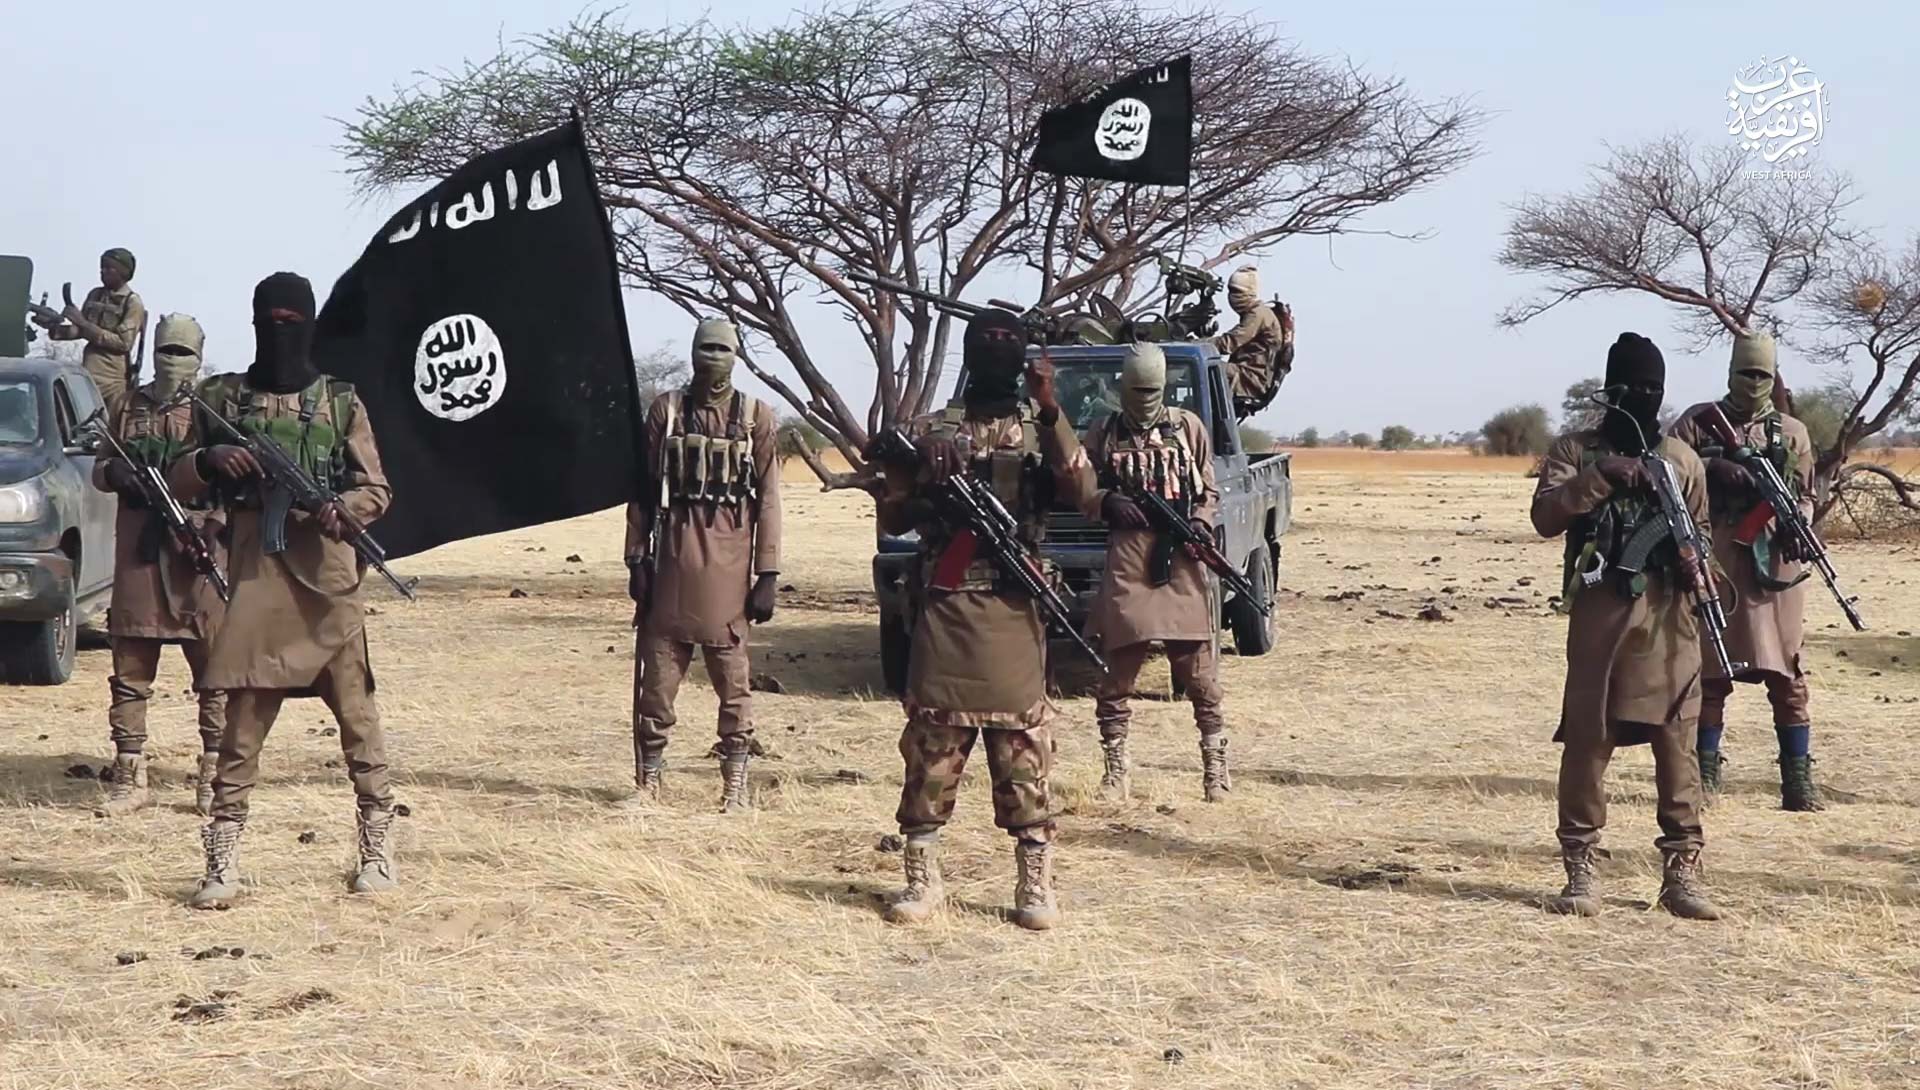 Boko Haram attaque un poste militaire dans la région du Lac Tchad